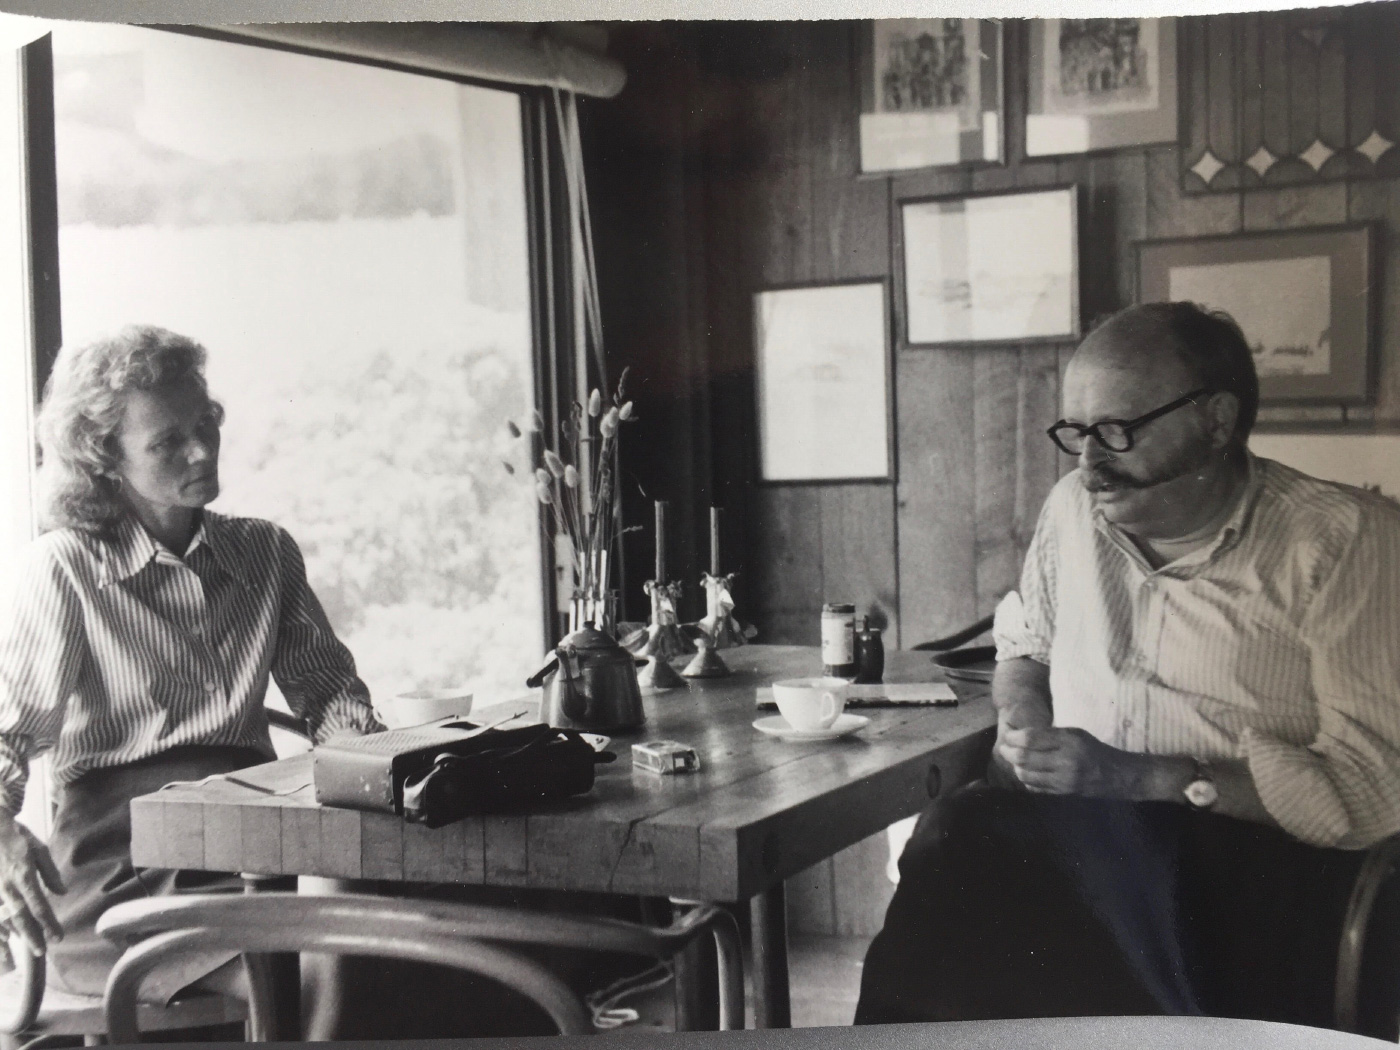 莎莉Byrne Woodbridge，在一张黑白照片中，与桌子上的男人谈话